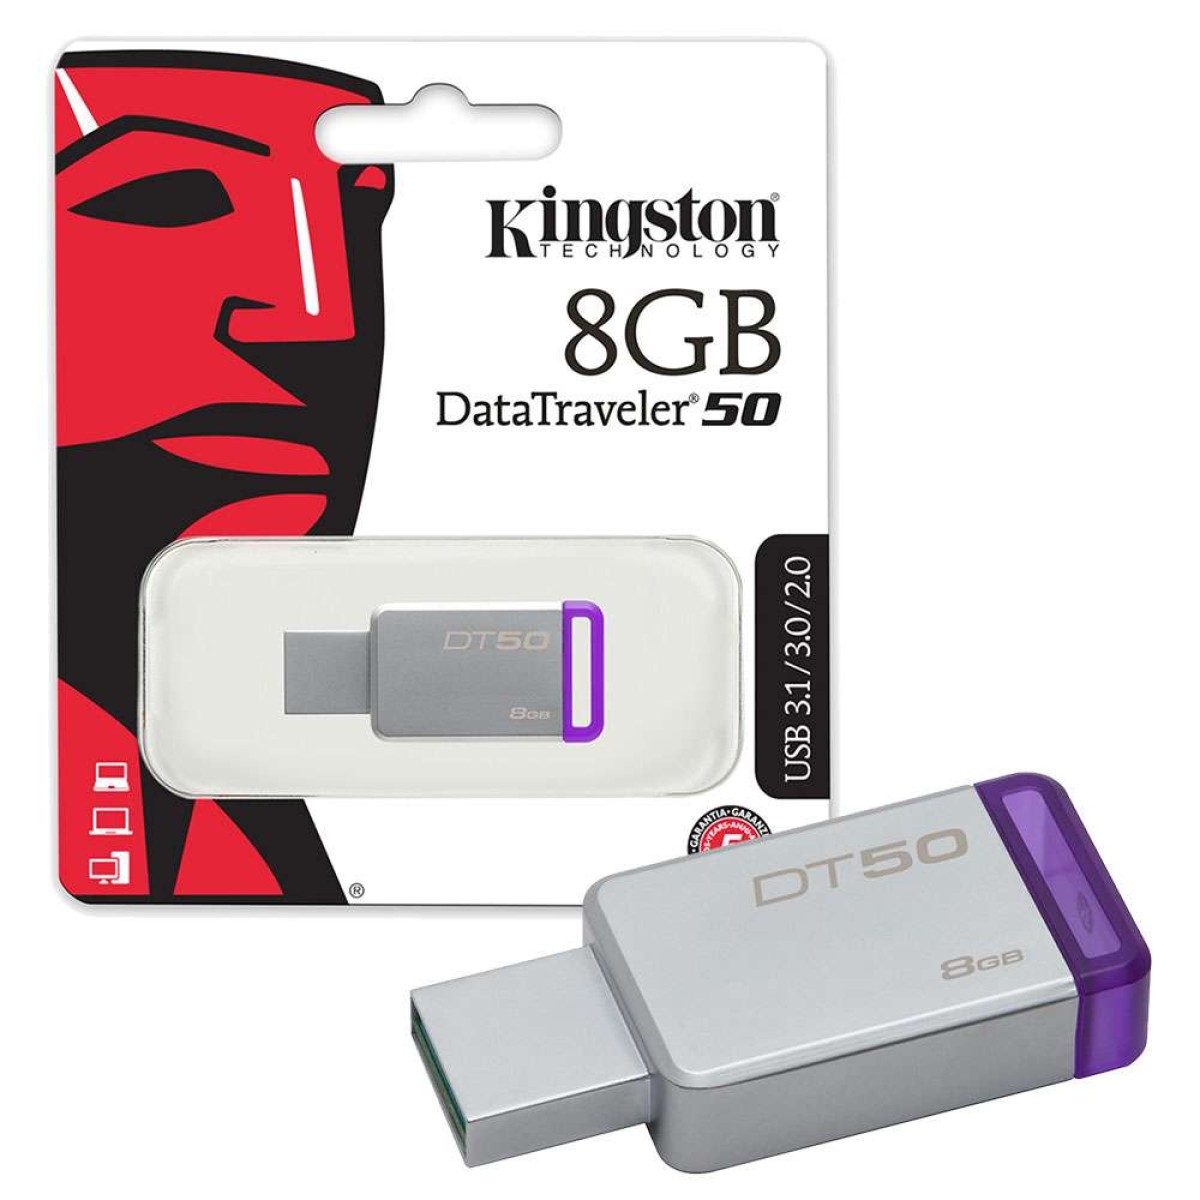 KINGSTON 8GB DT50 USB 3.0 Flash Drive